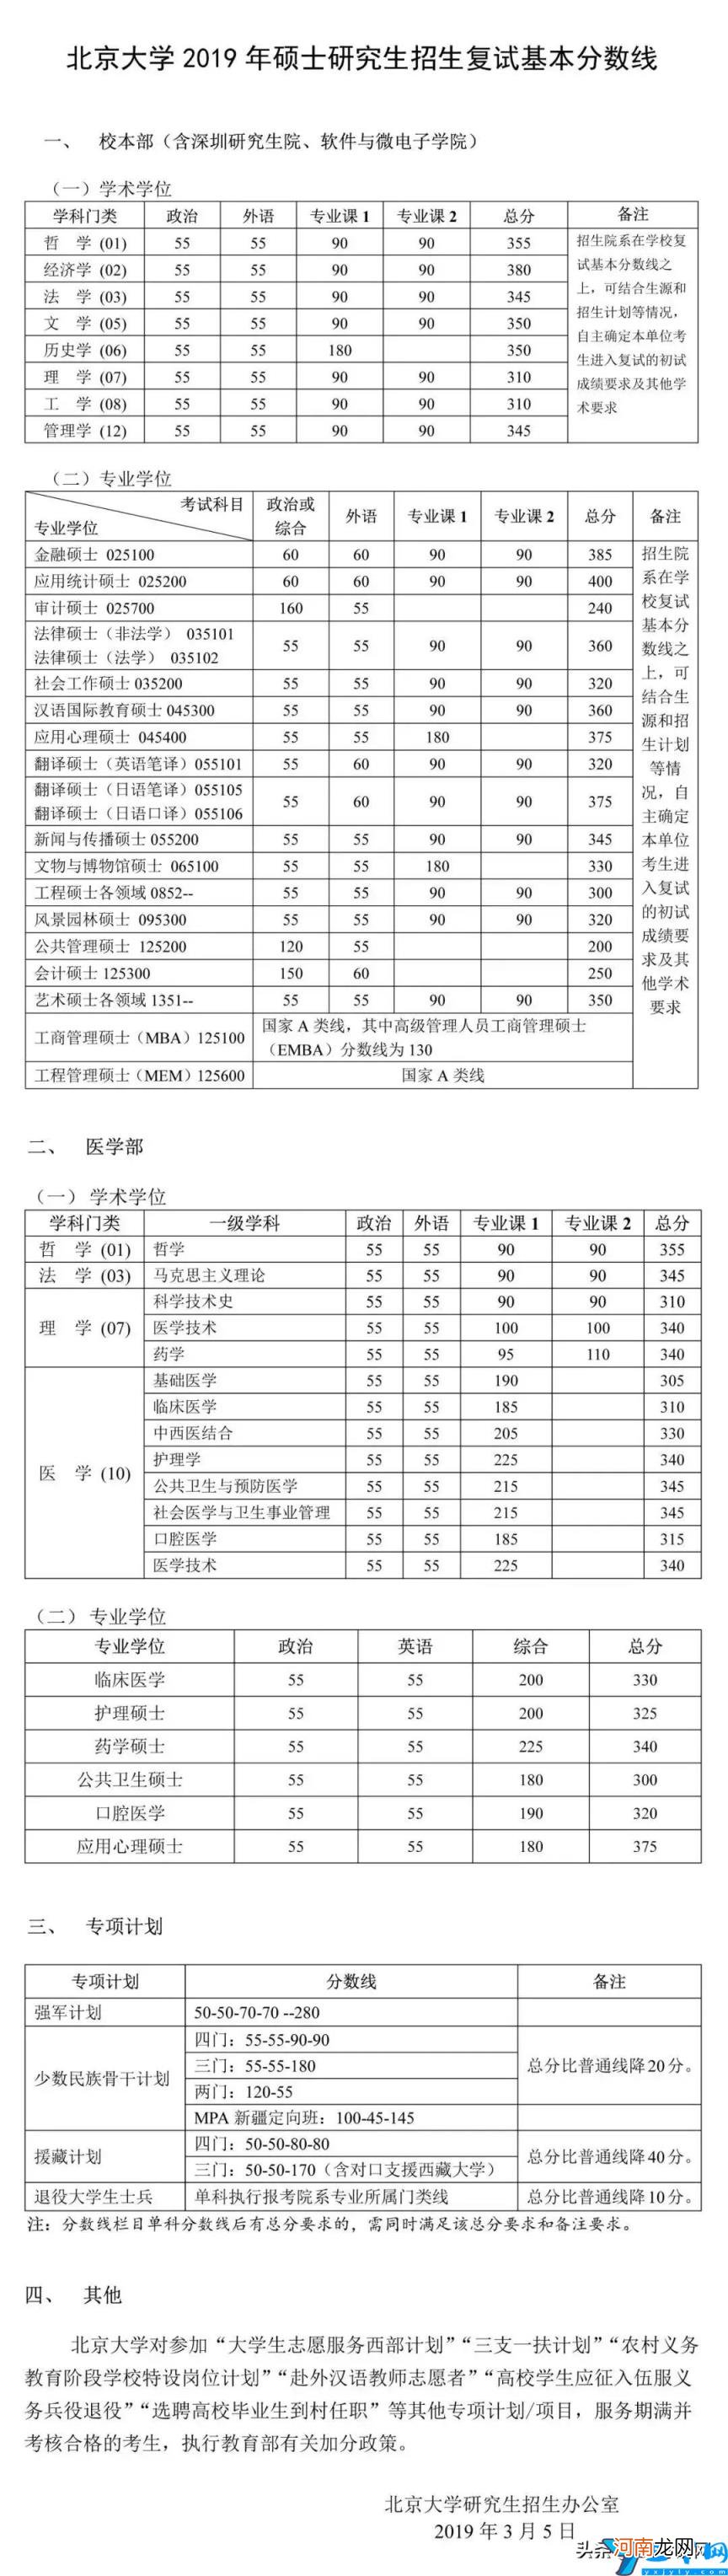 2017 北京大学研究生分数线